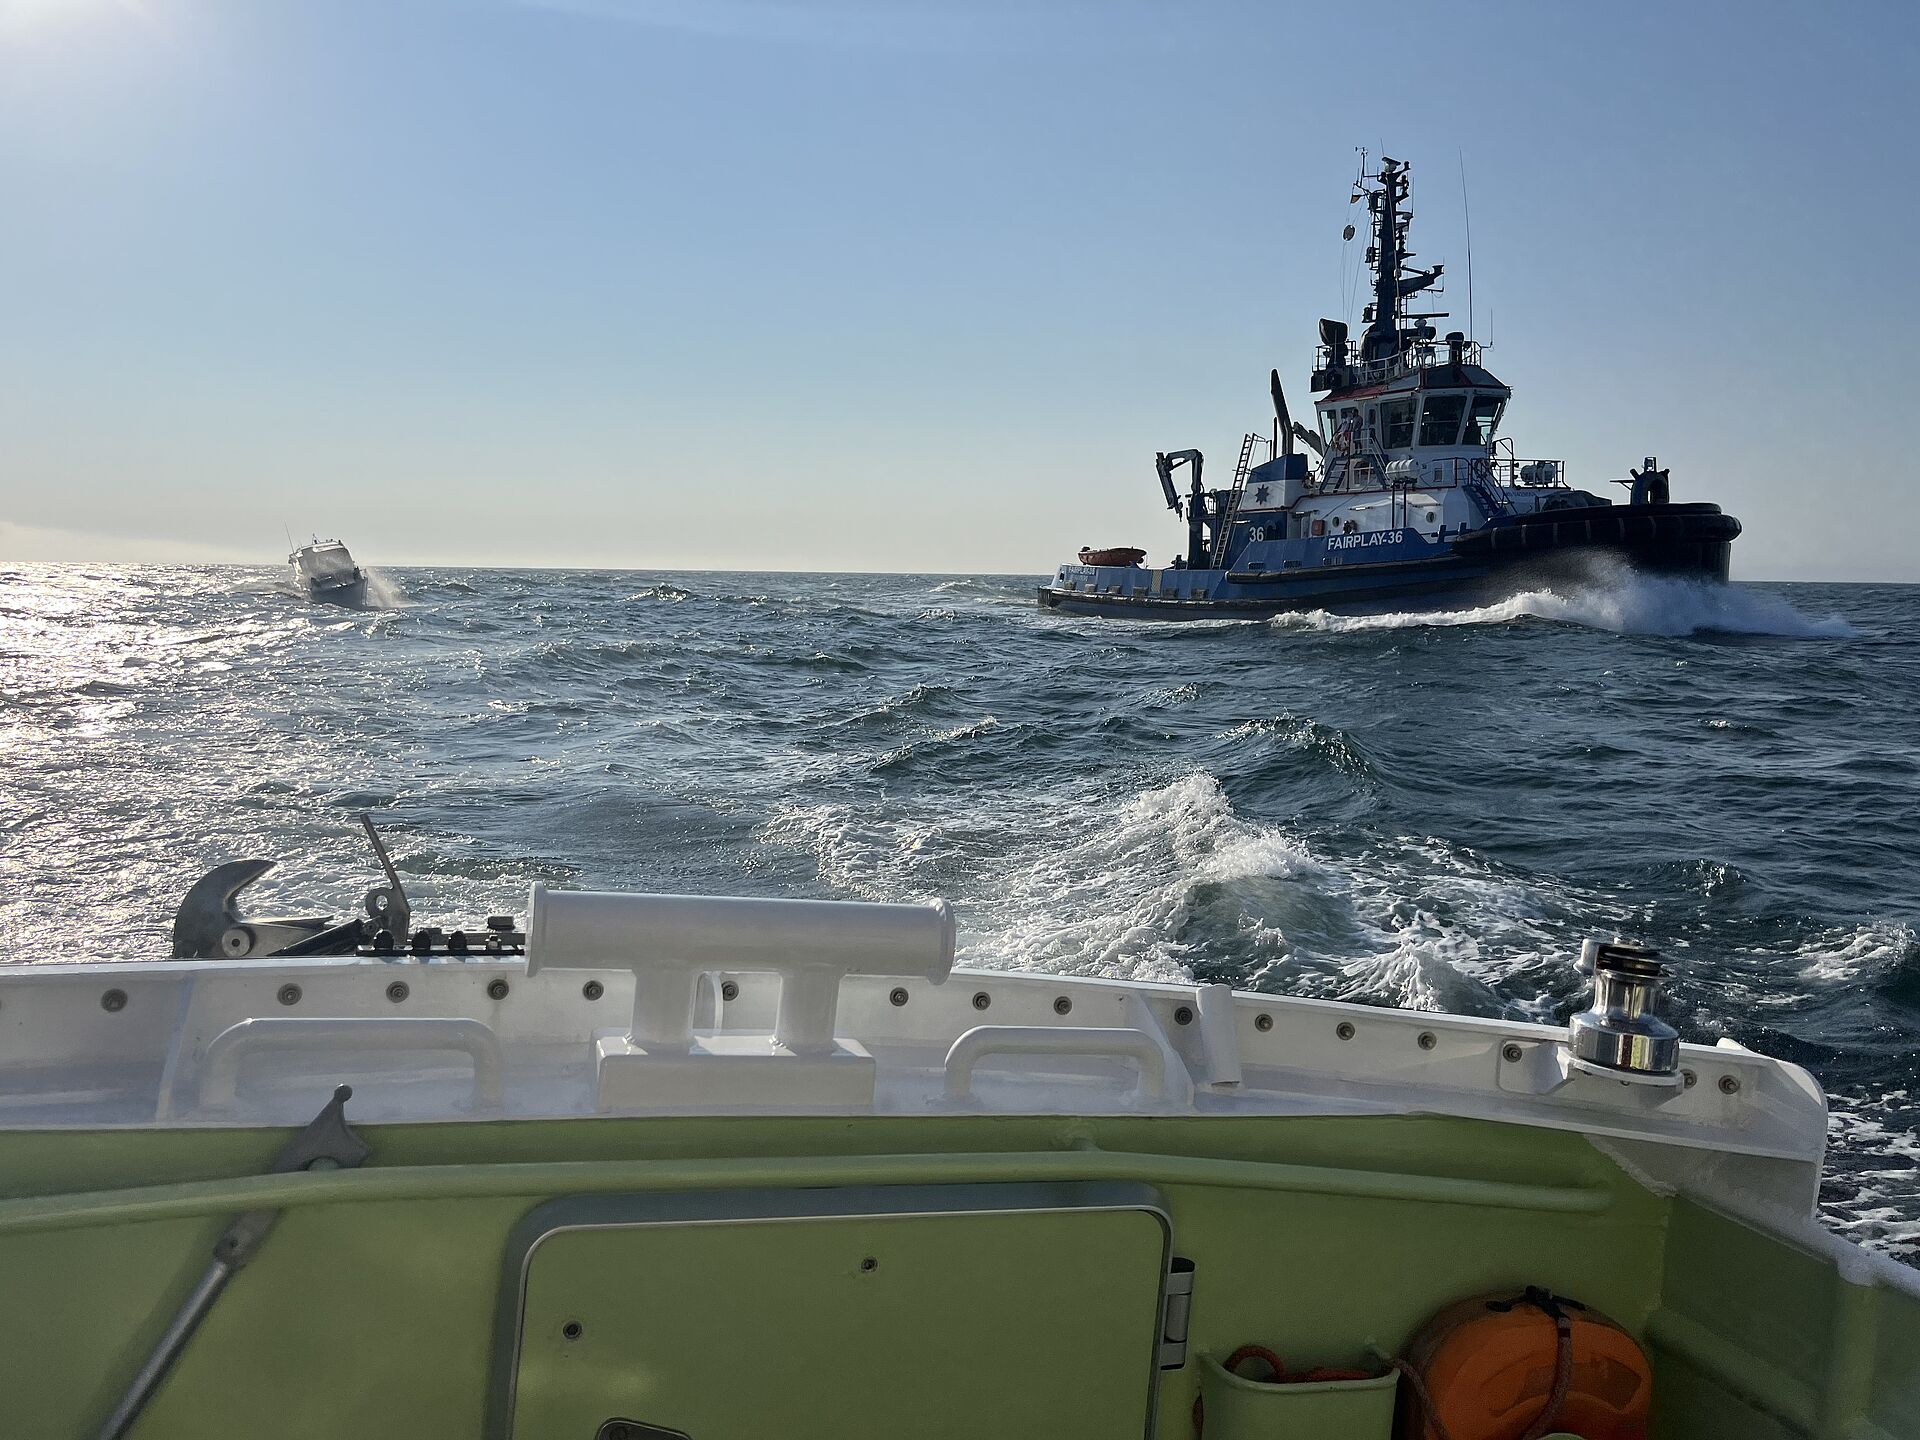 Seenotretter der Station Kühlungsborn im Einsatz für orientierungslose Sportboot-Besatzung